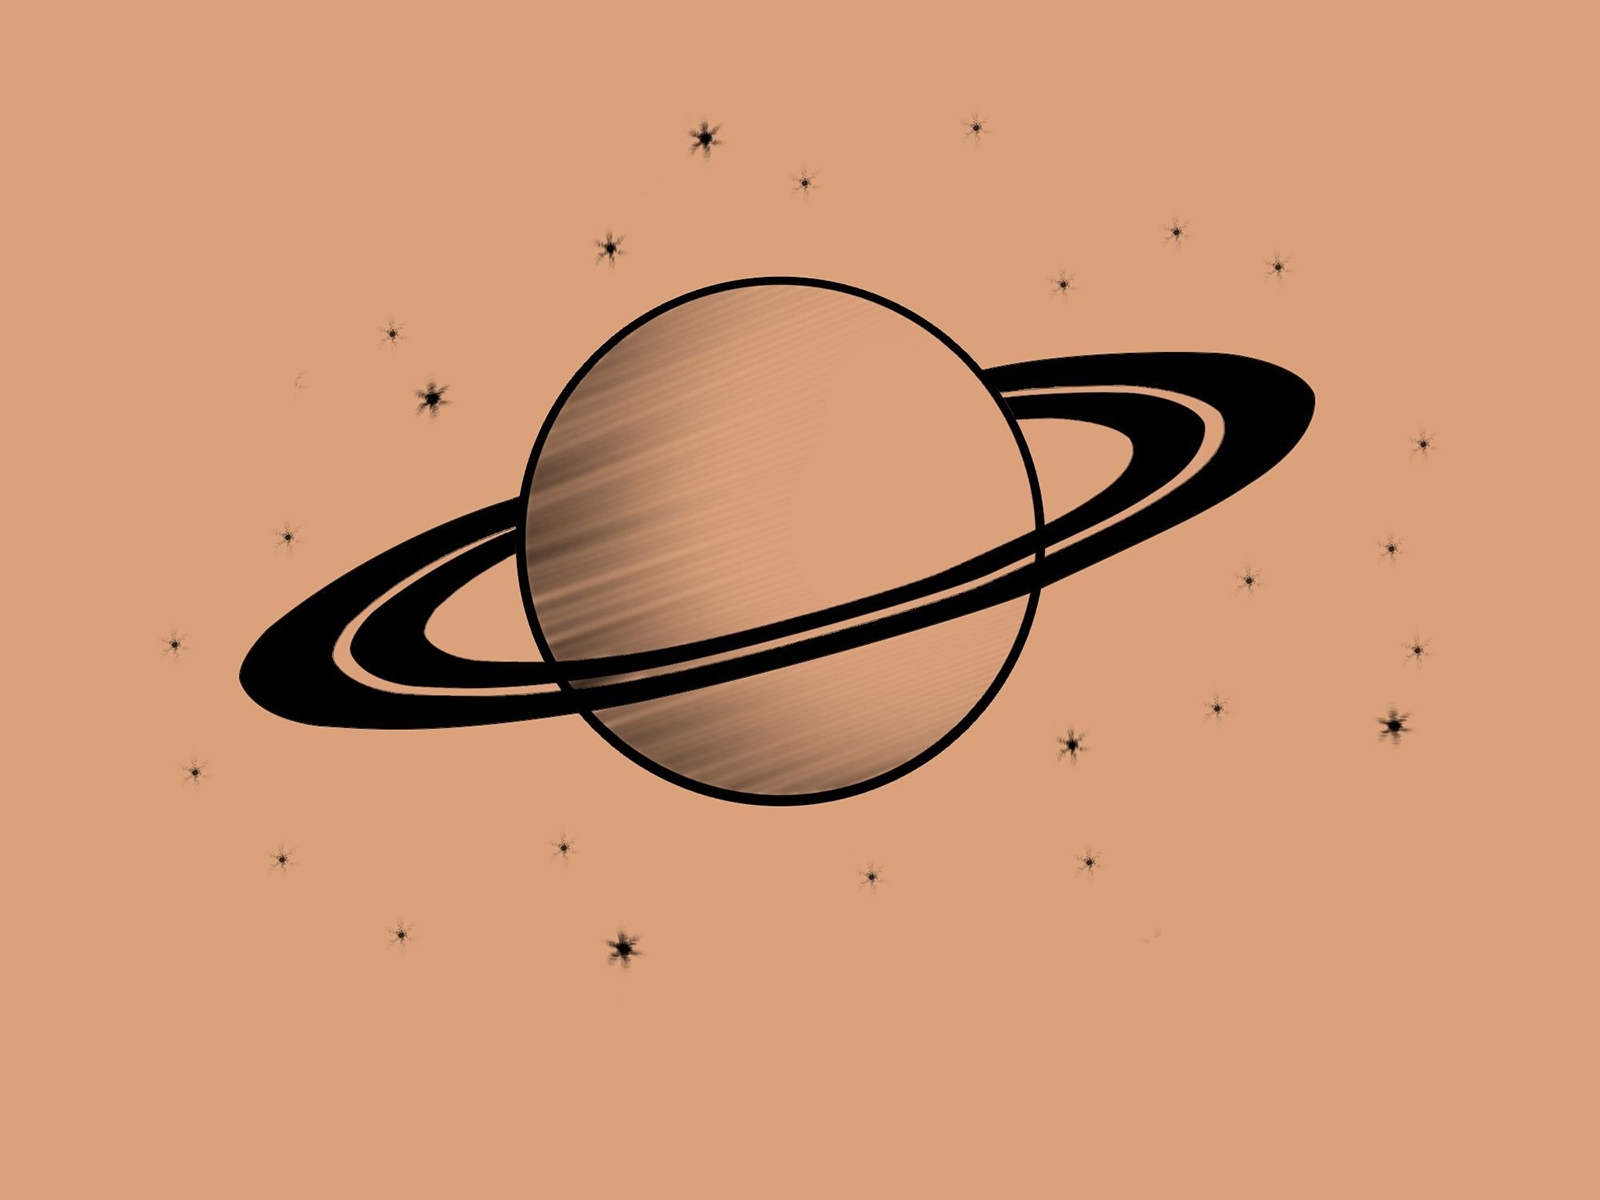 Детский рисунок сатурн